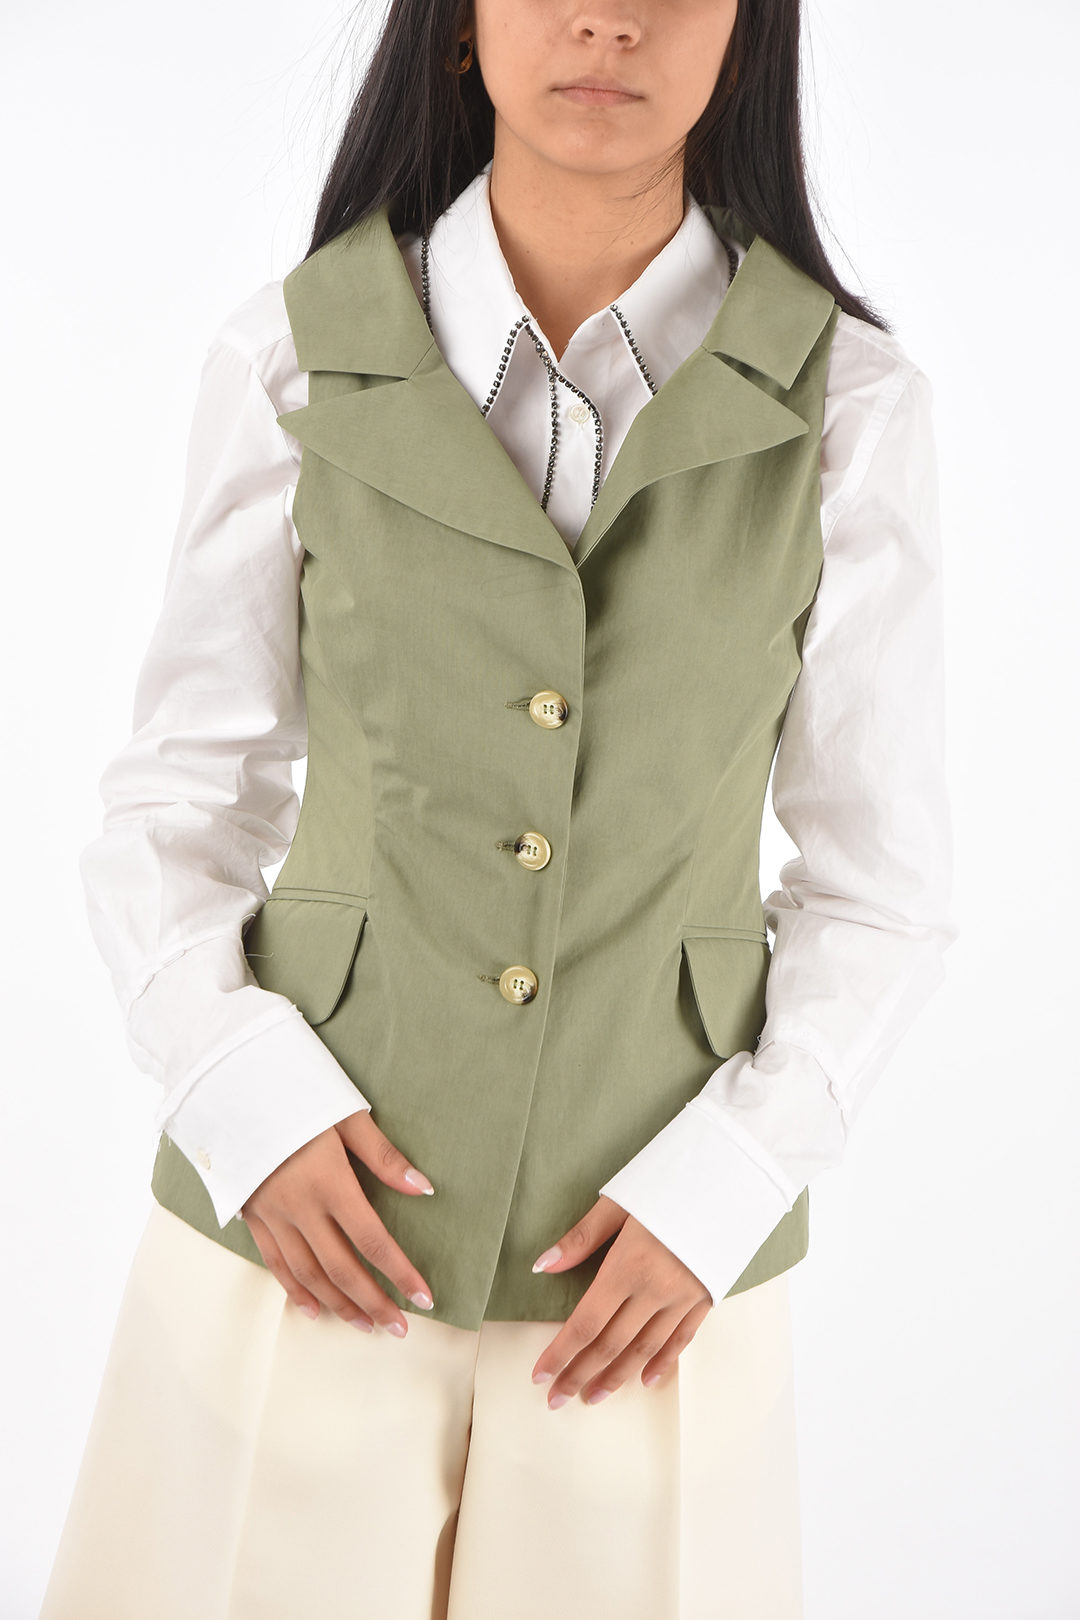 Mens Tweed Lapel Vest Jacket Herringbone Waistcoat Casual Formal Sleeveless  Tops  eBay